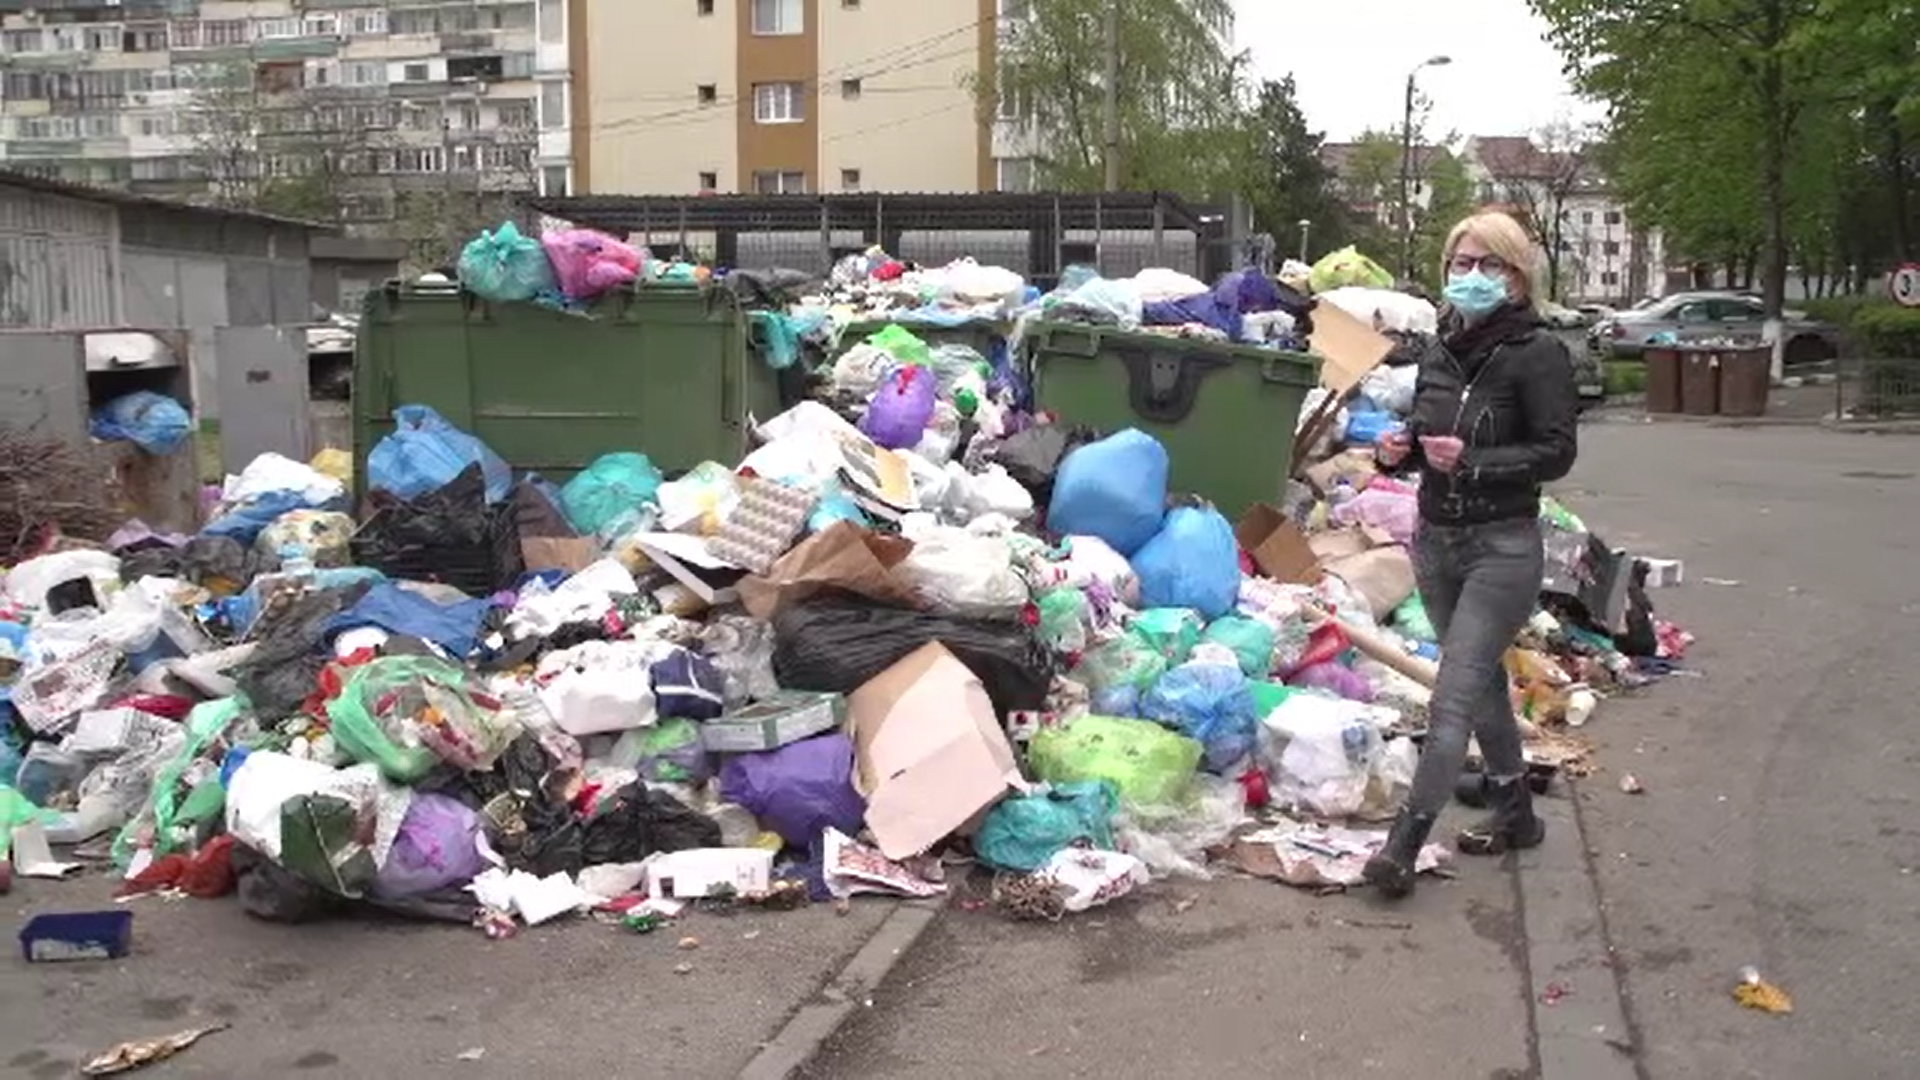 Angajații societăţii de salubritate din Ploiești sunt în grevă, iar gunoaiele se revarsă din ghene